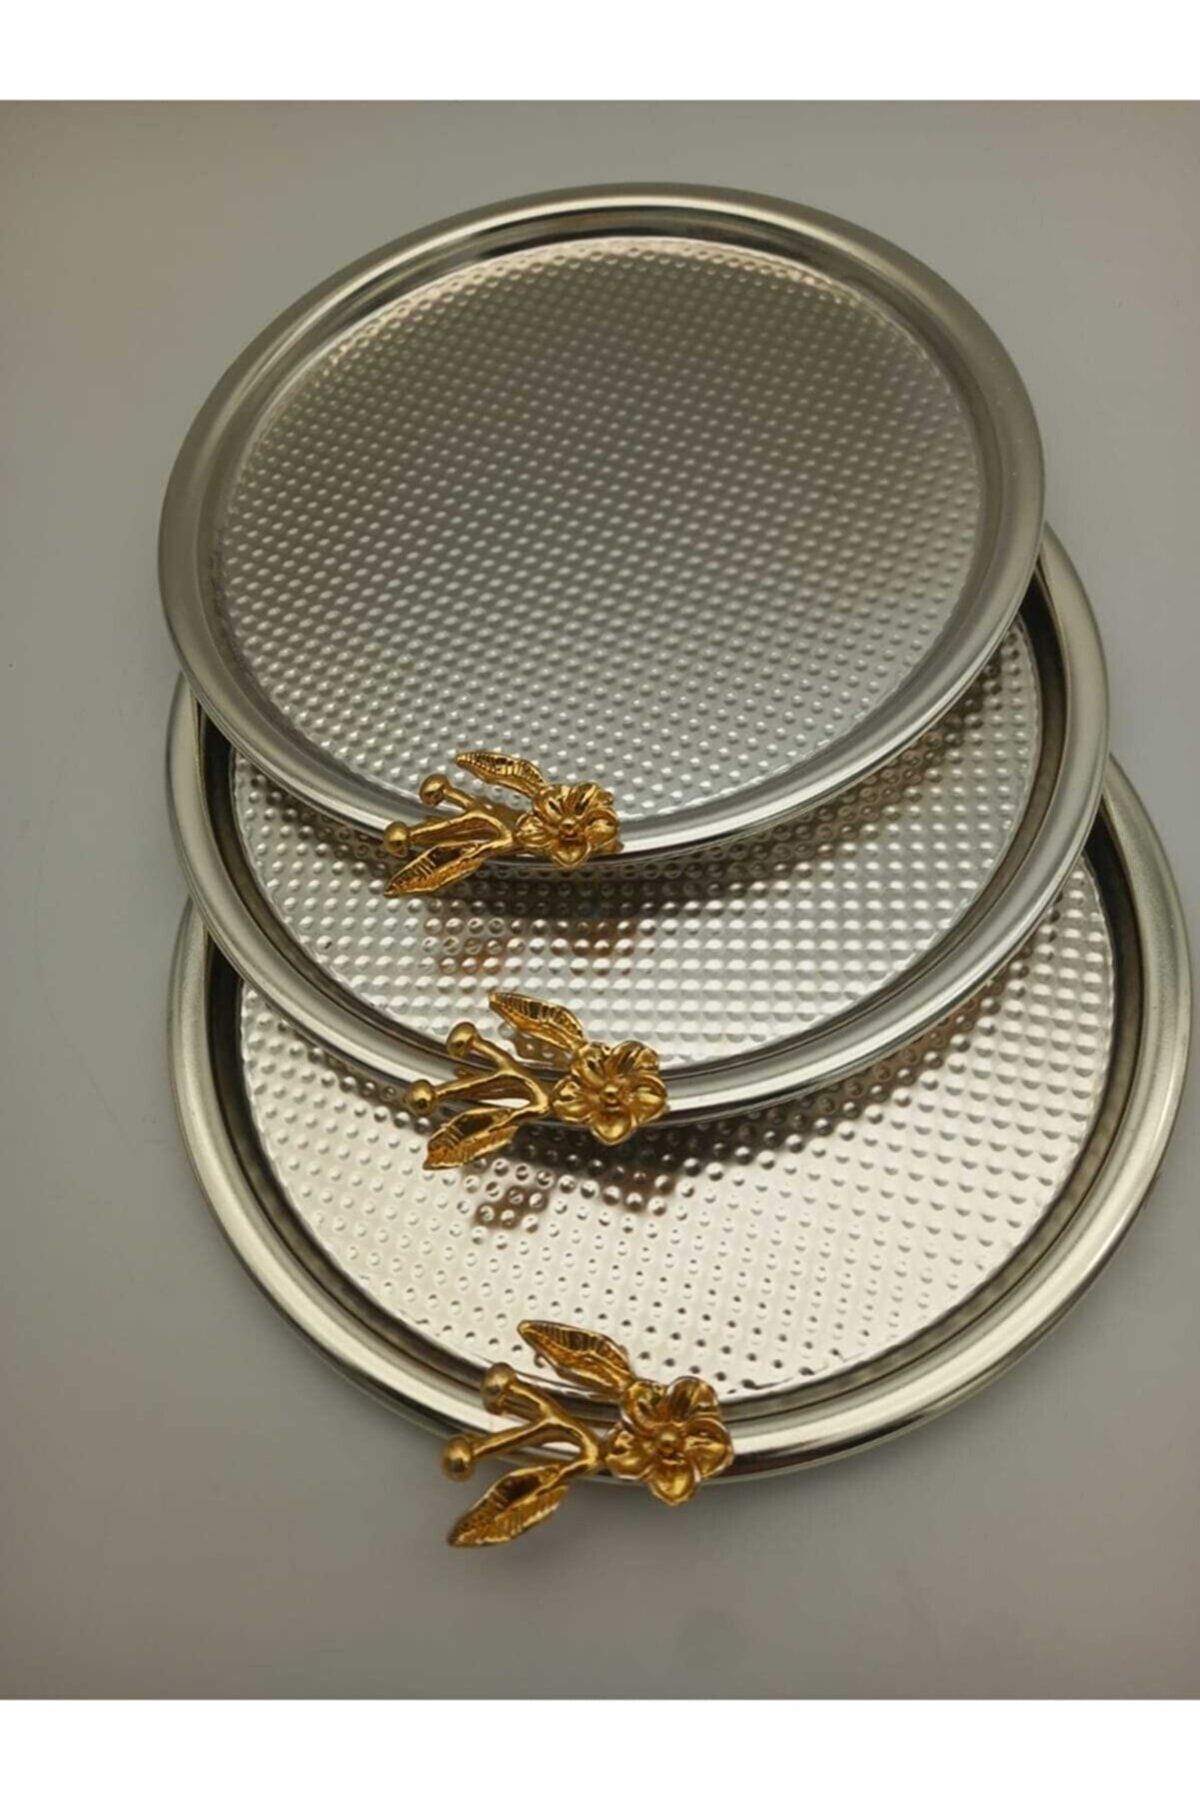 Fiyakalı Ürünler Atölyesi 3'lü Japon Güllü Gümüş Dekoratif Yuvarlak Tepsi, Çay, Kahve, Tatlı, Pasta Servisi Sunum Tepsisi 22cm